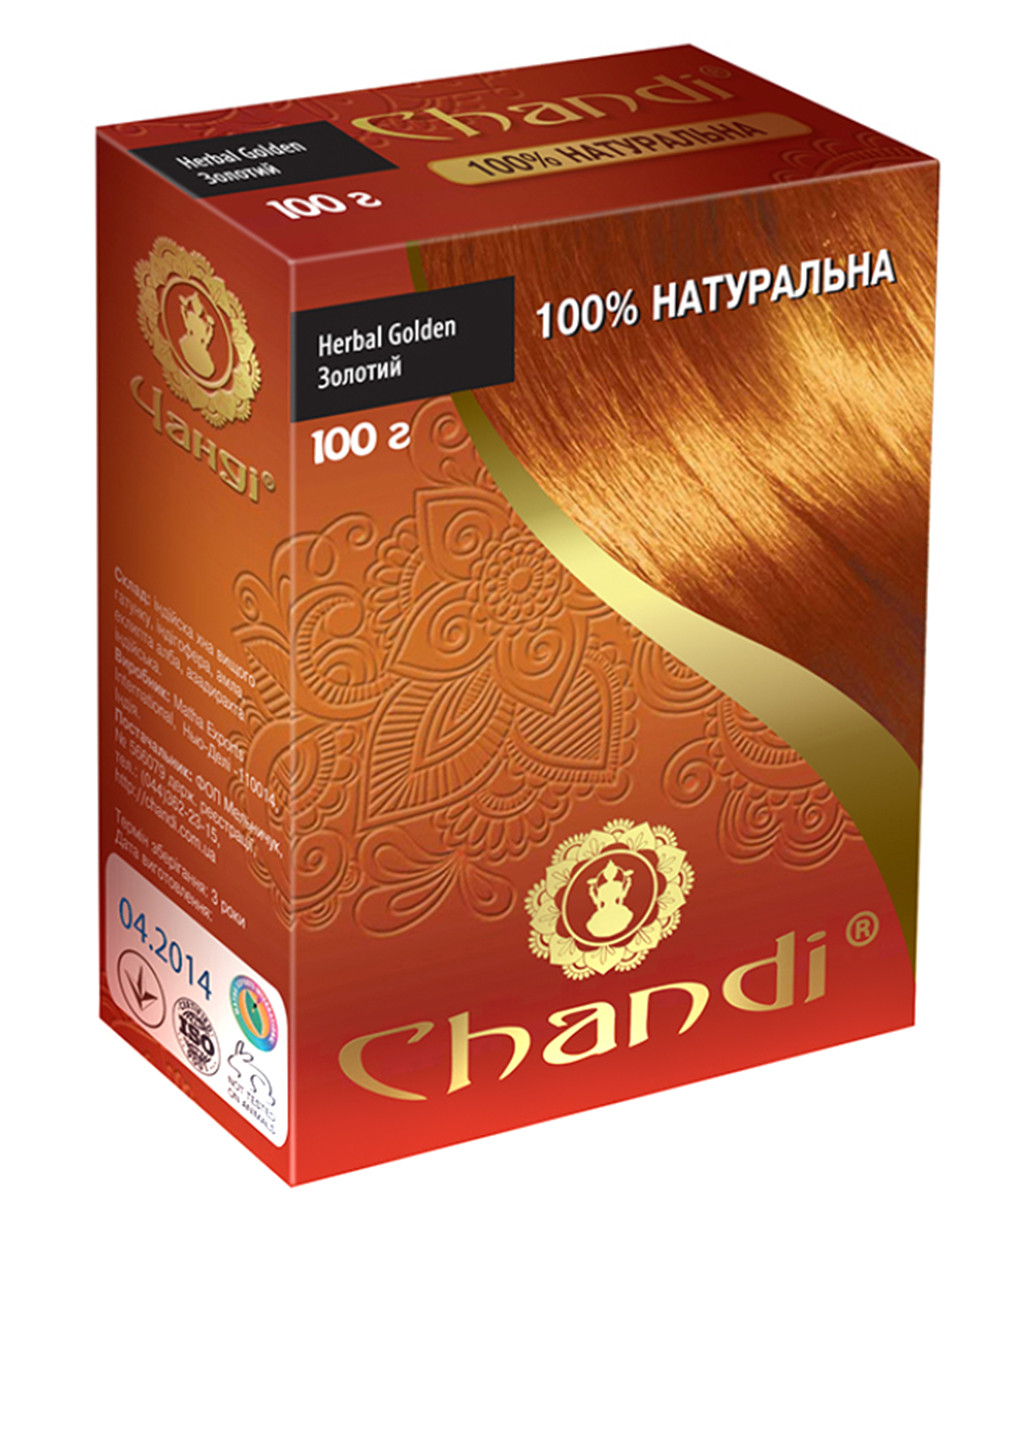 Лечебная краска для волос "100% Натуральная" Золотой/Golden Chandi (88091428)